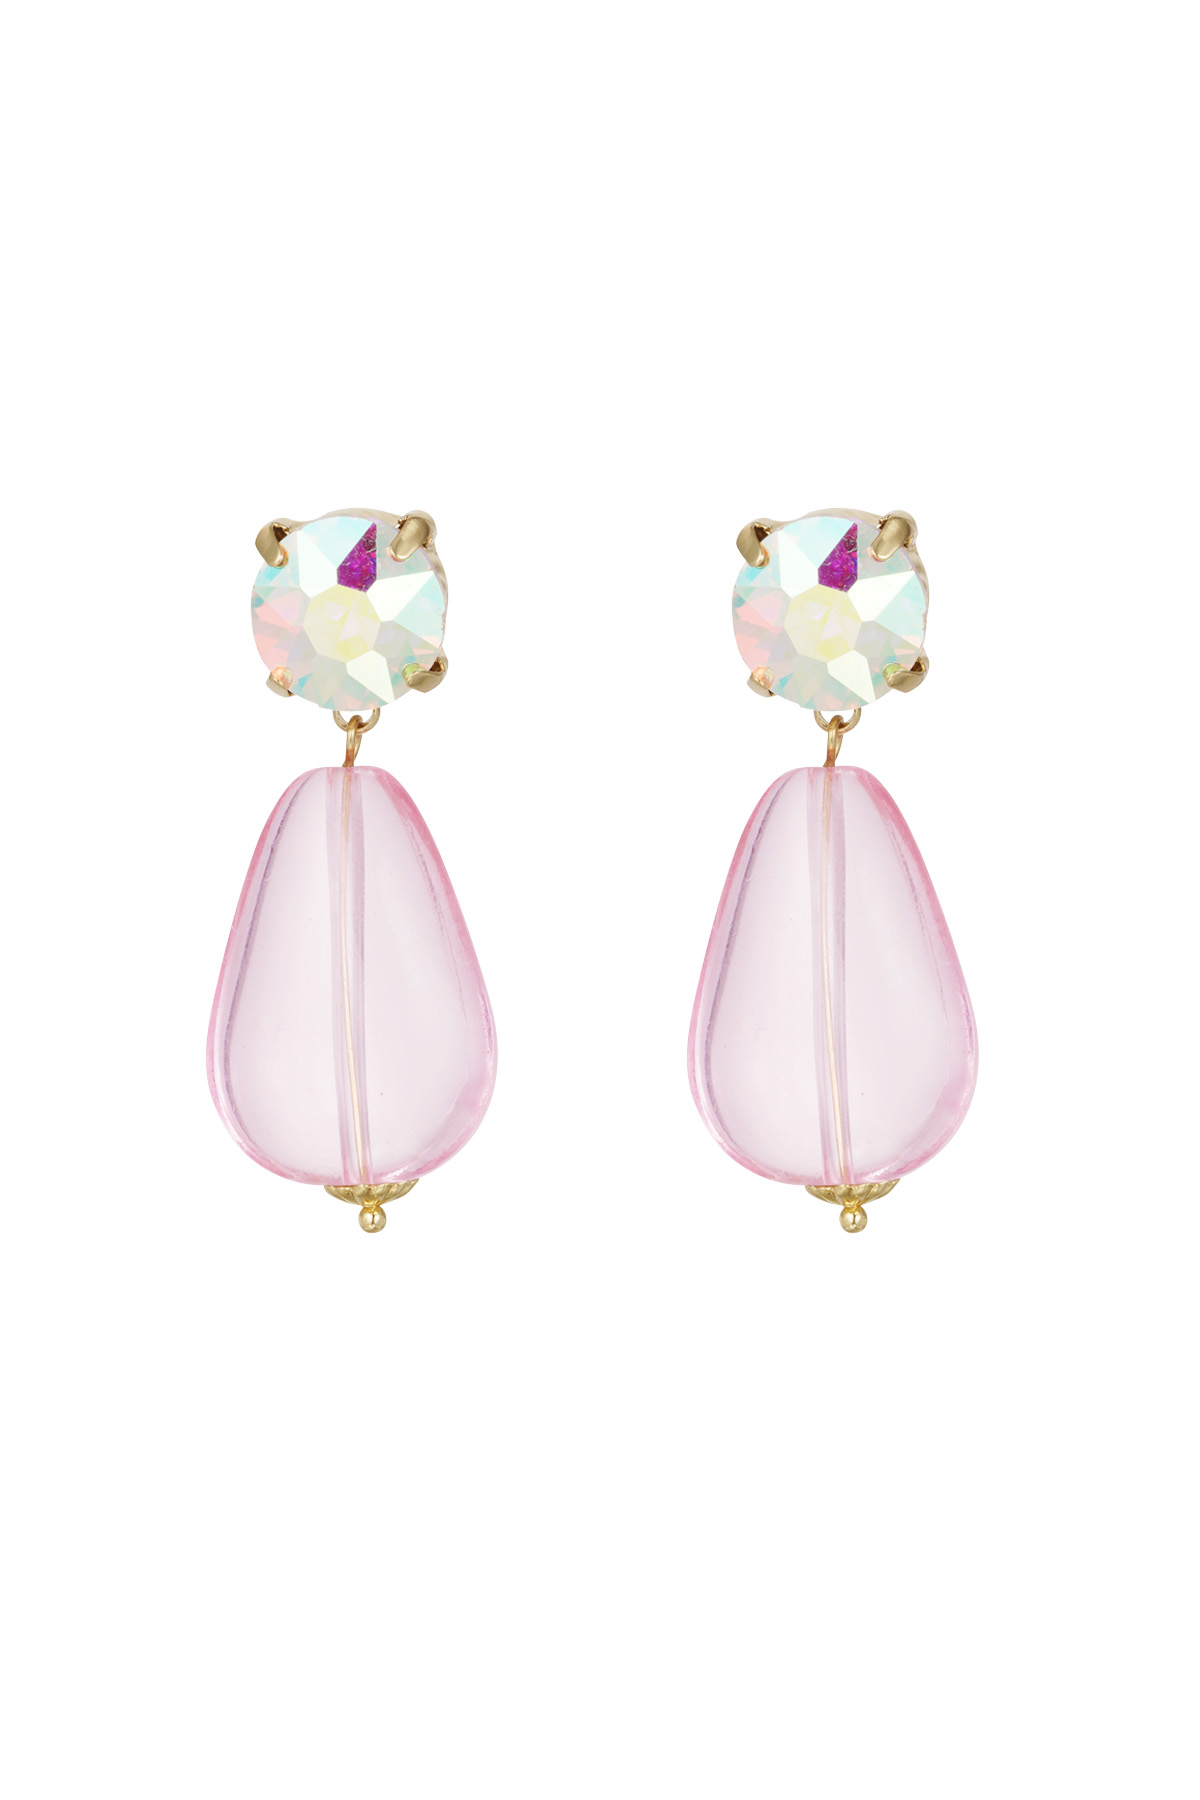 Earrings wonderland - pink h5 